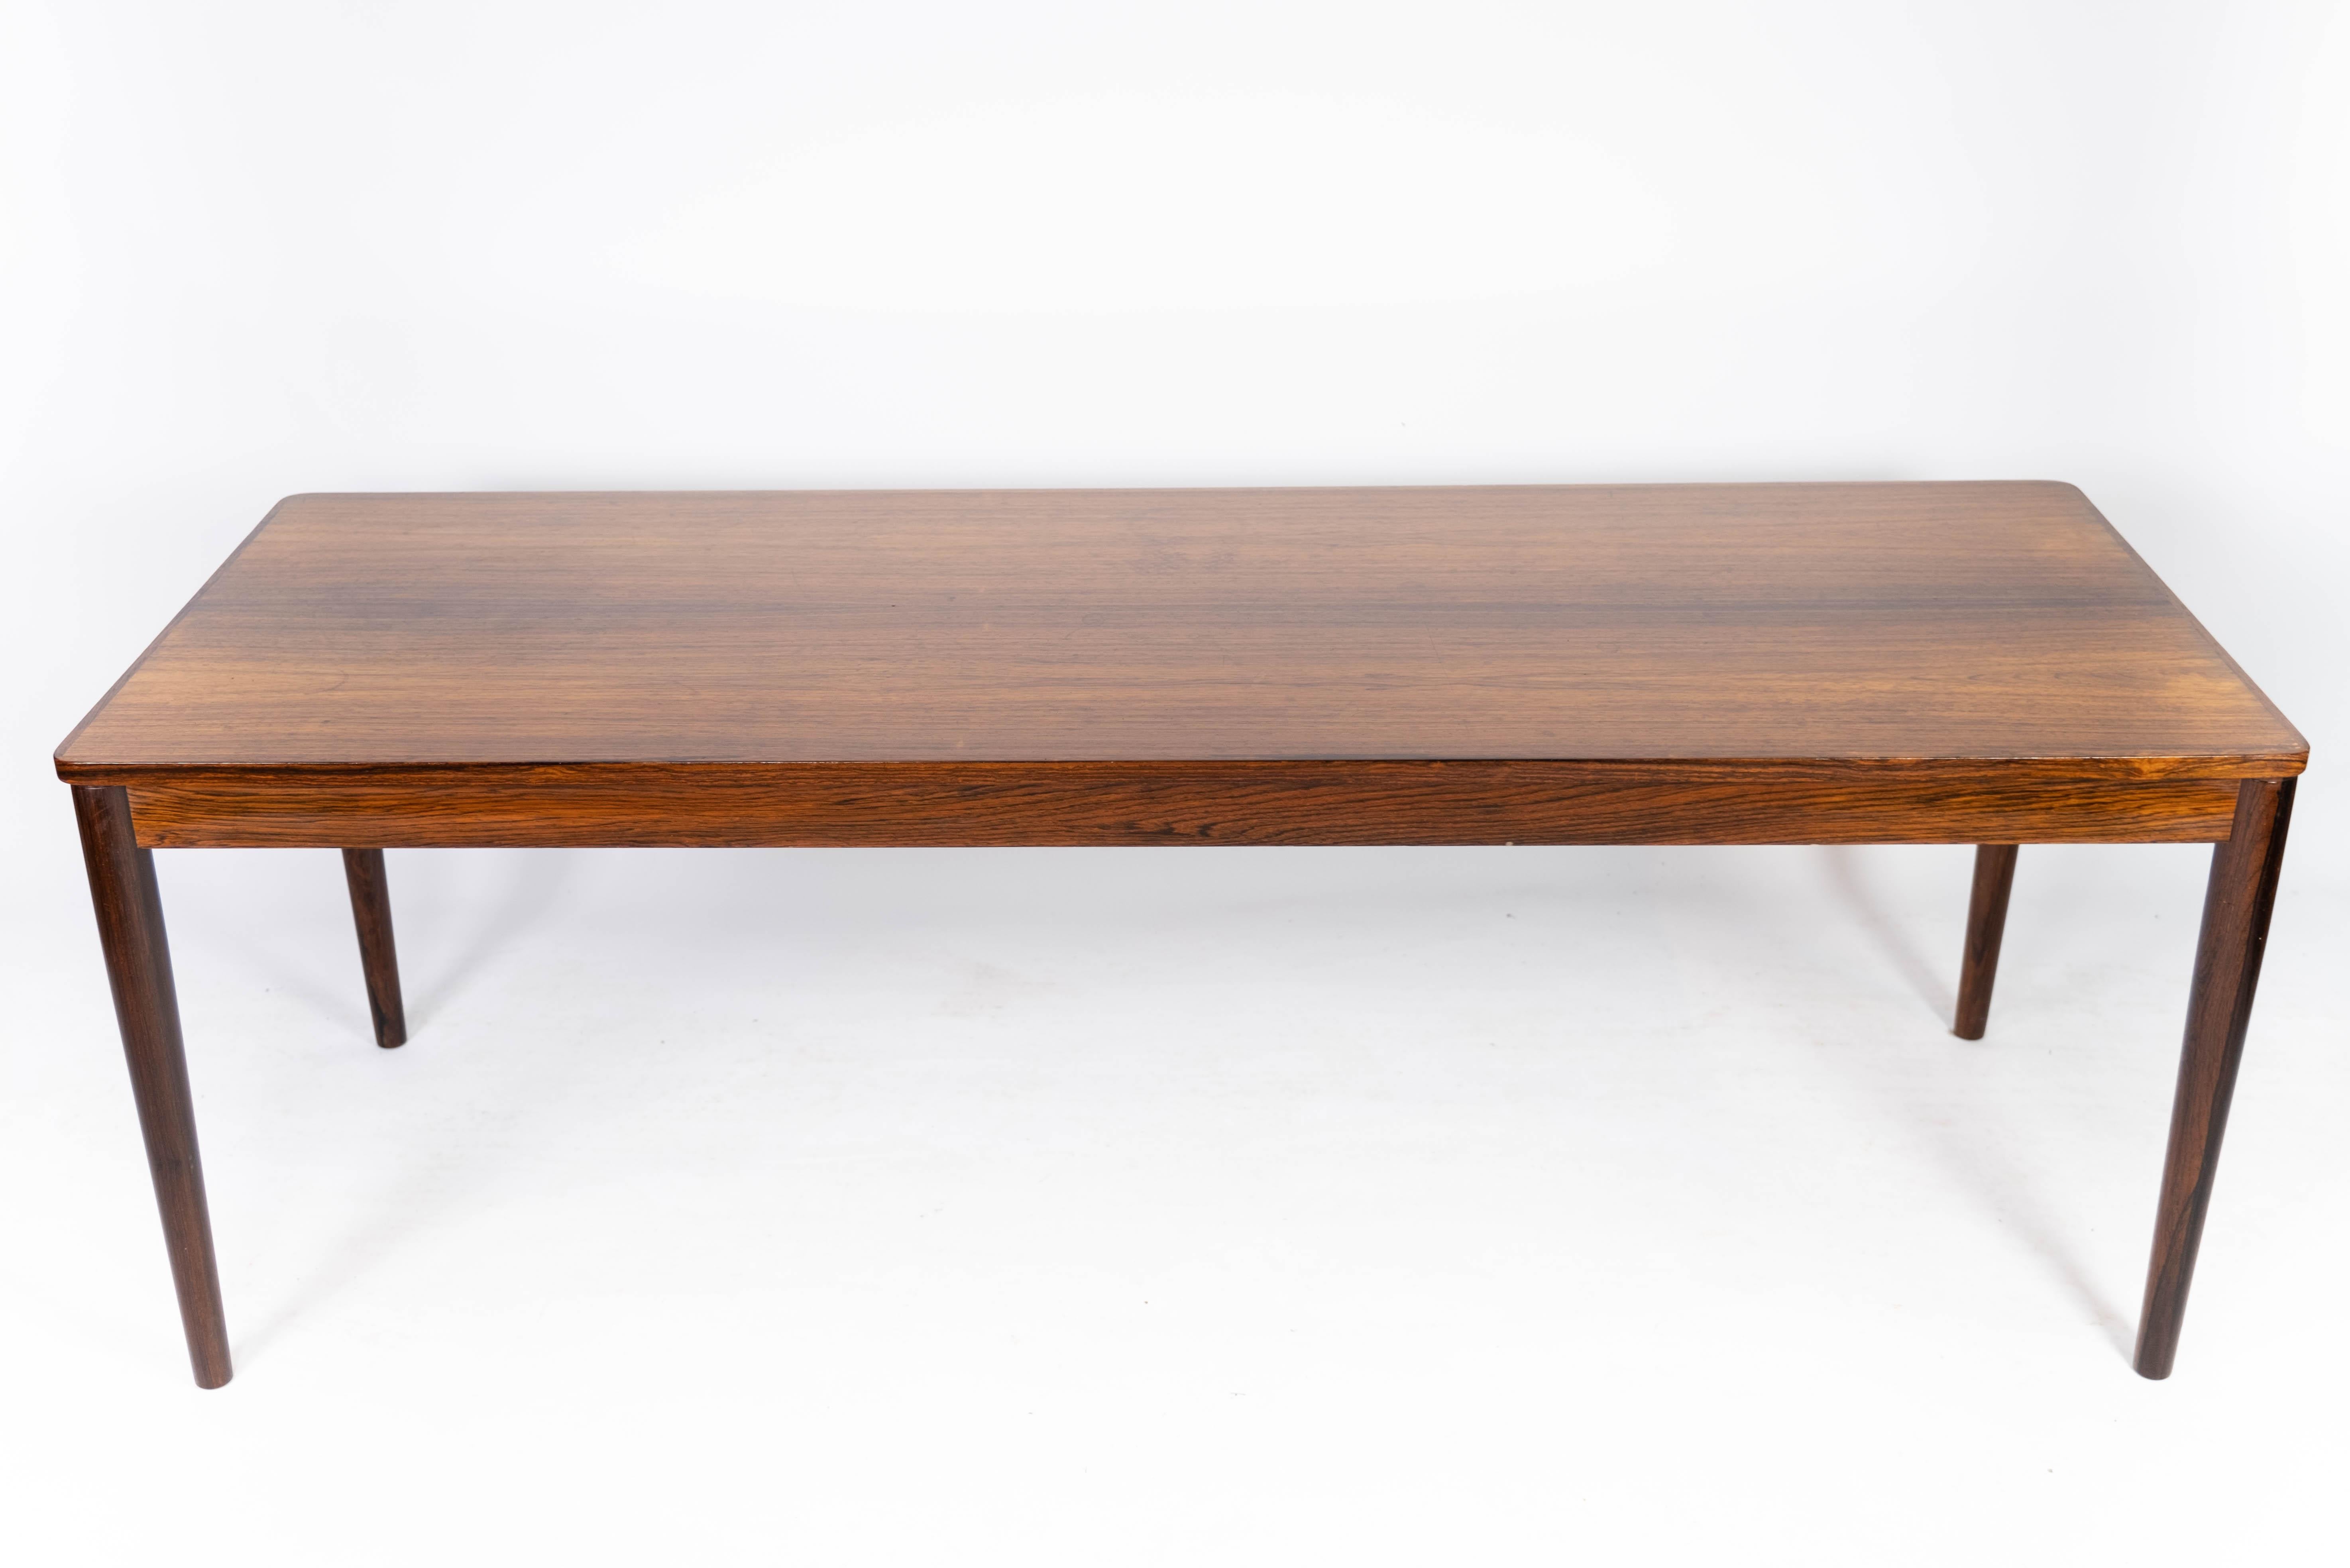 Cette table basse en bois de rose des années 1960 respire l'esthétique du design danois dans toute sa splendeur. Fabriquée en bois de rose, la table ajoute de la chaleur et du caractère à n'importe quelle pièce. Avec son design simple et intemporel,